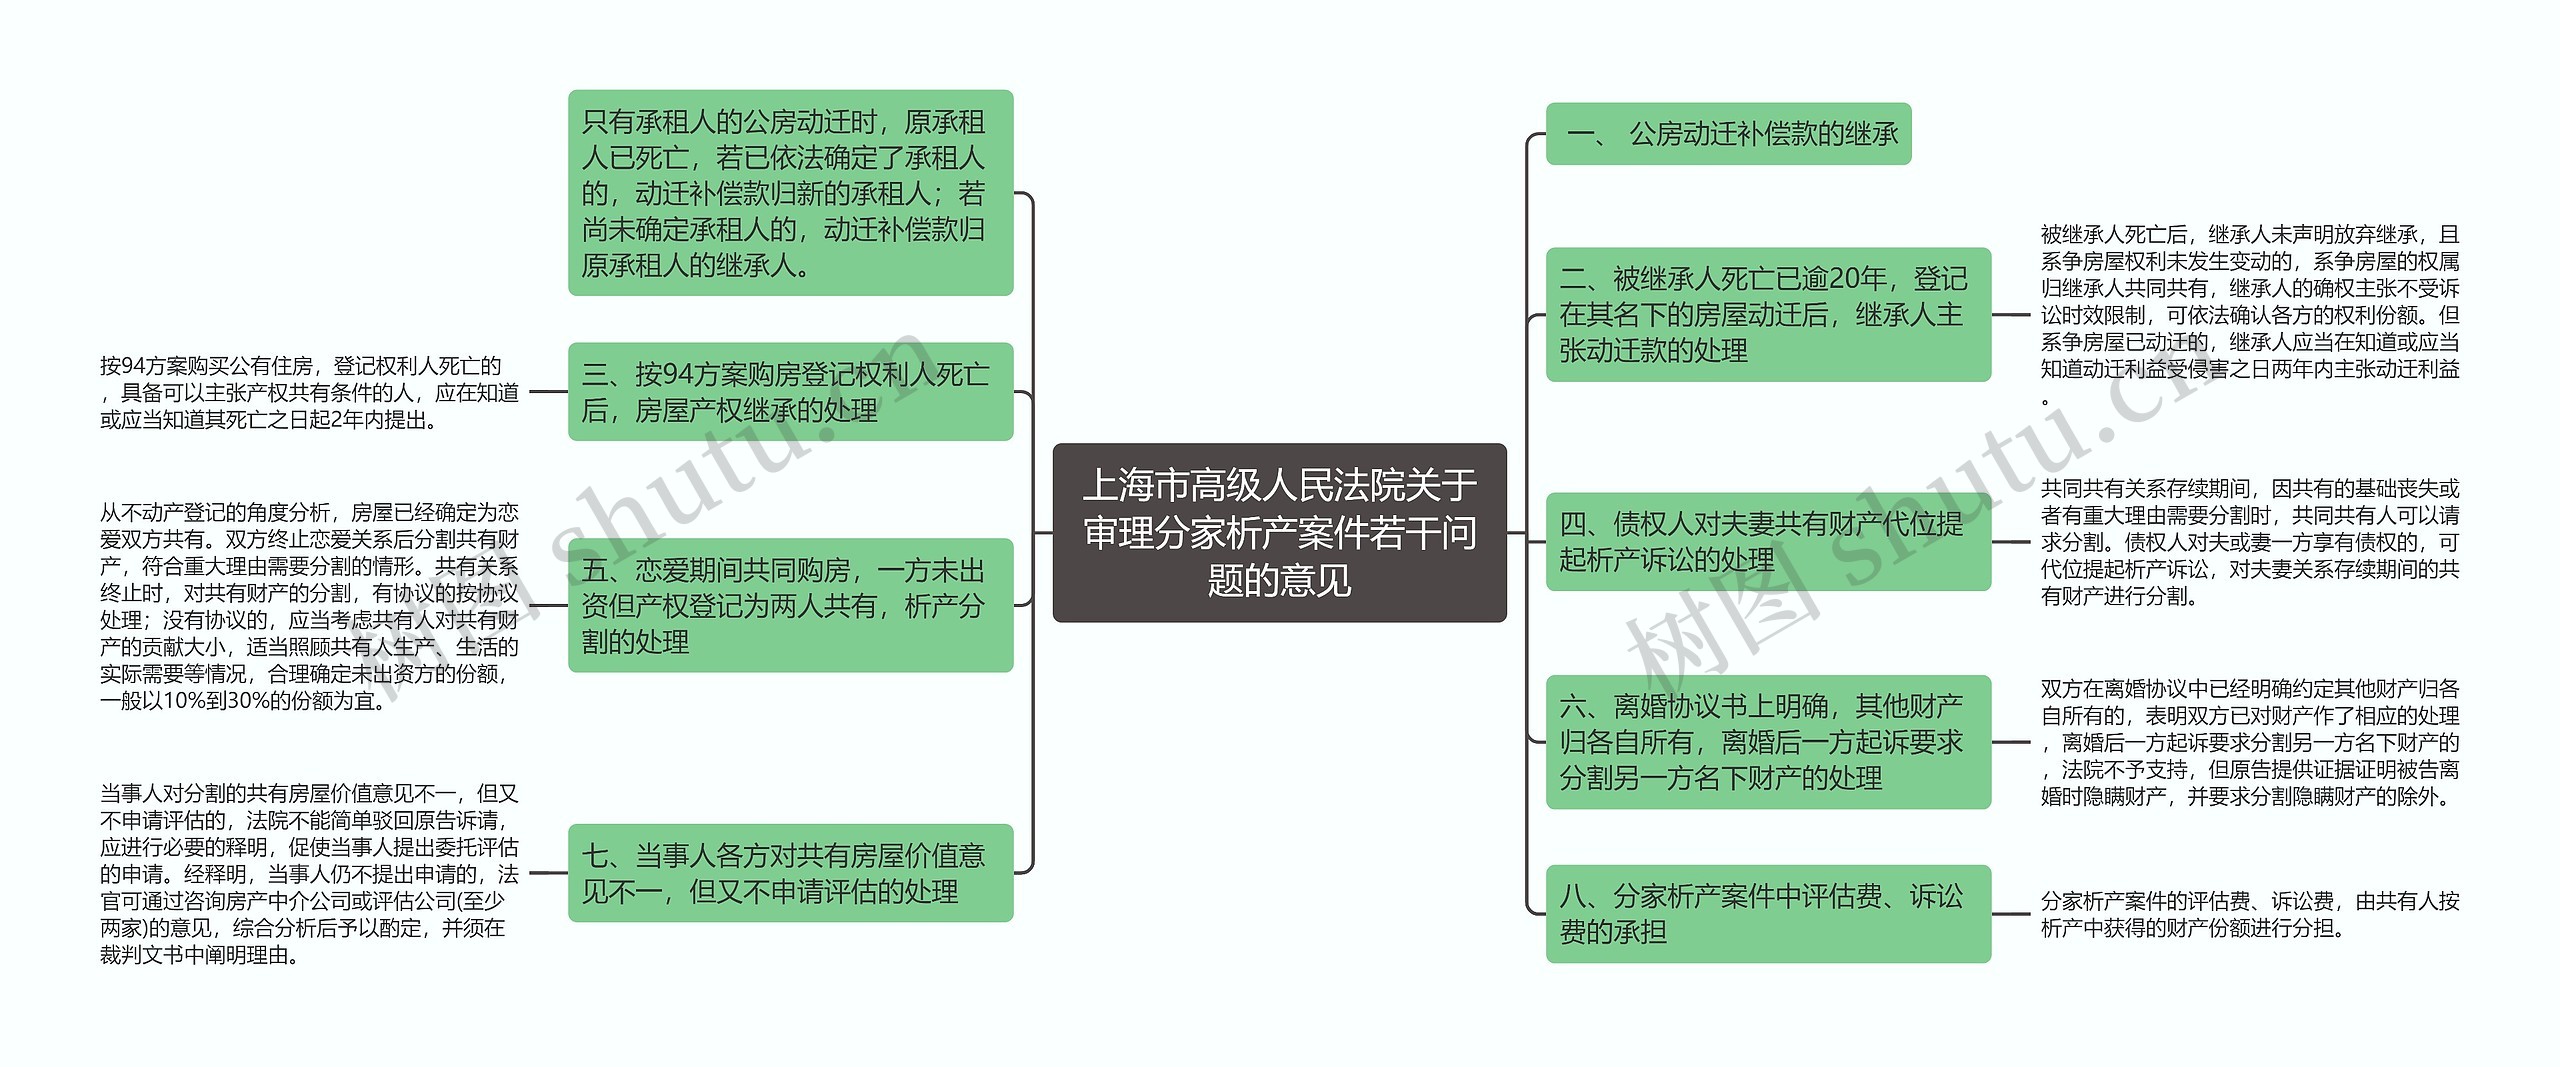 上海市高级人民法院关于审理分家析产案件若干问题的意见思维导图